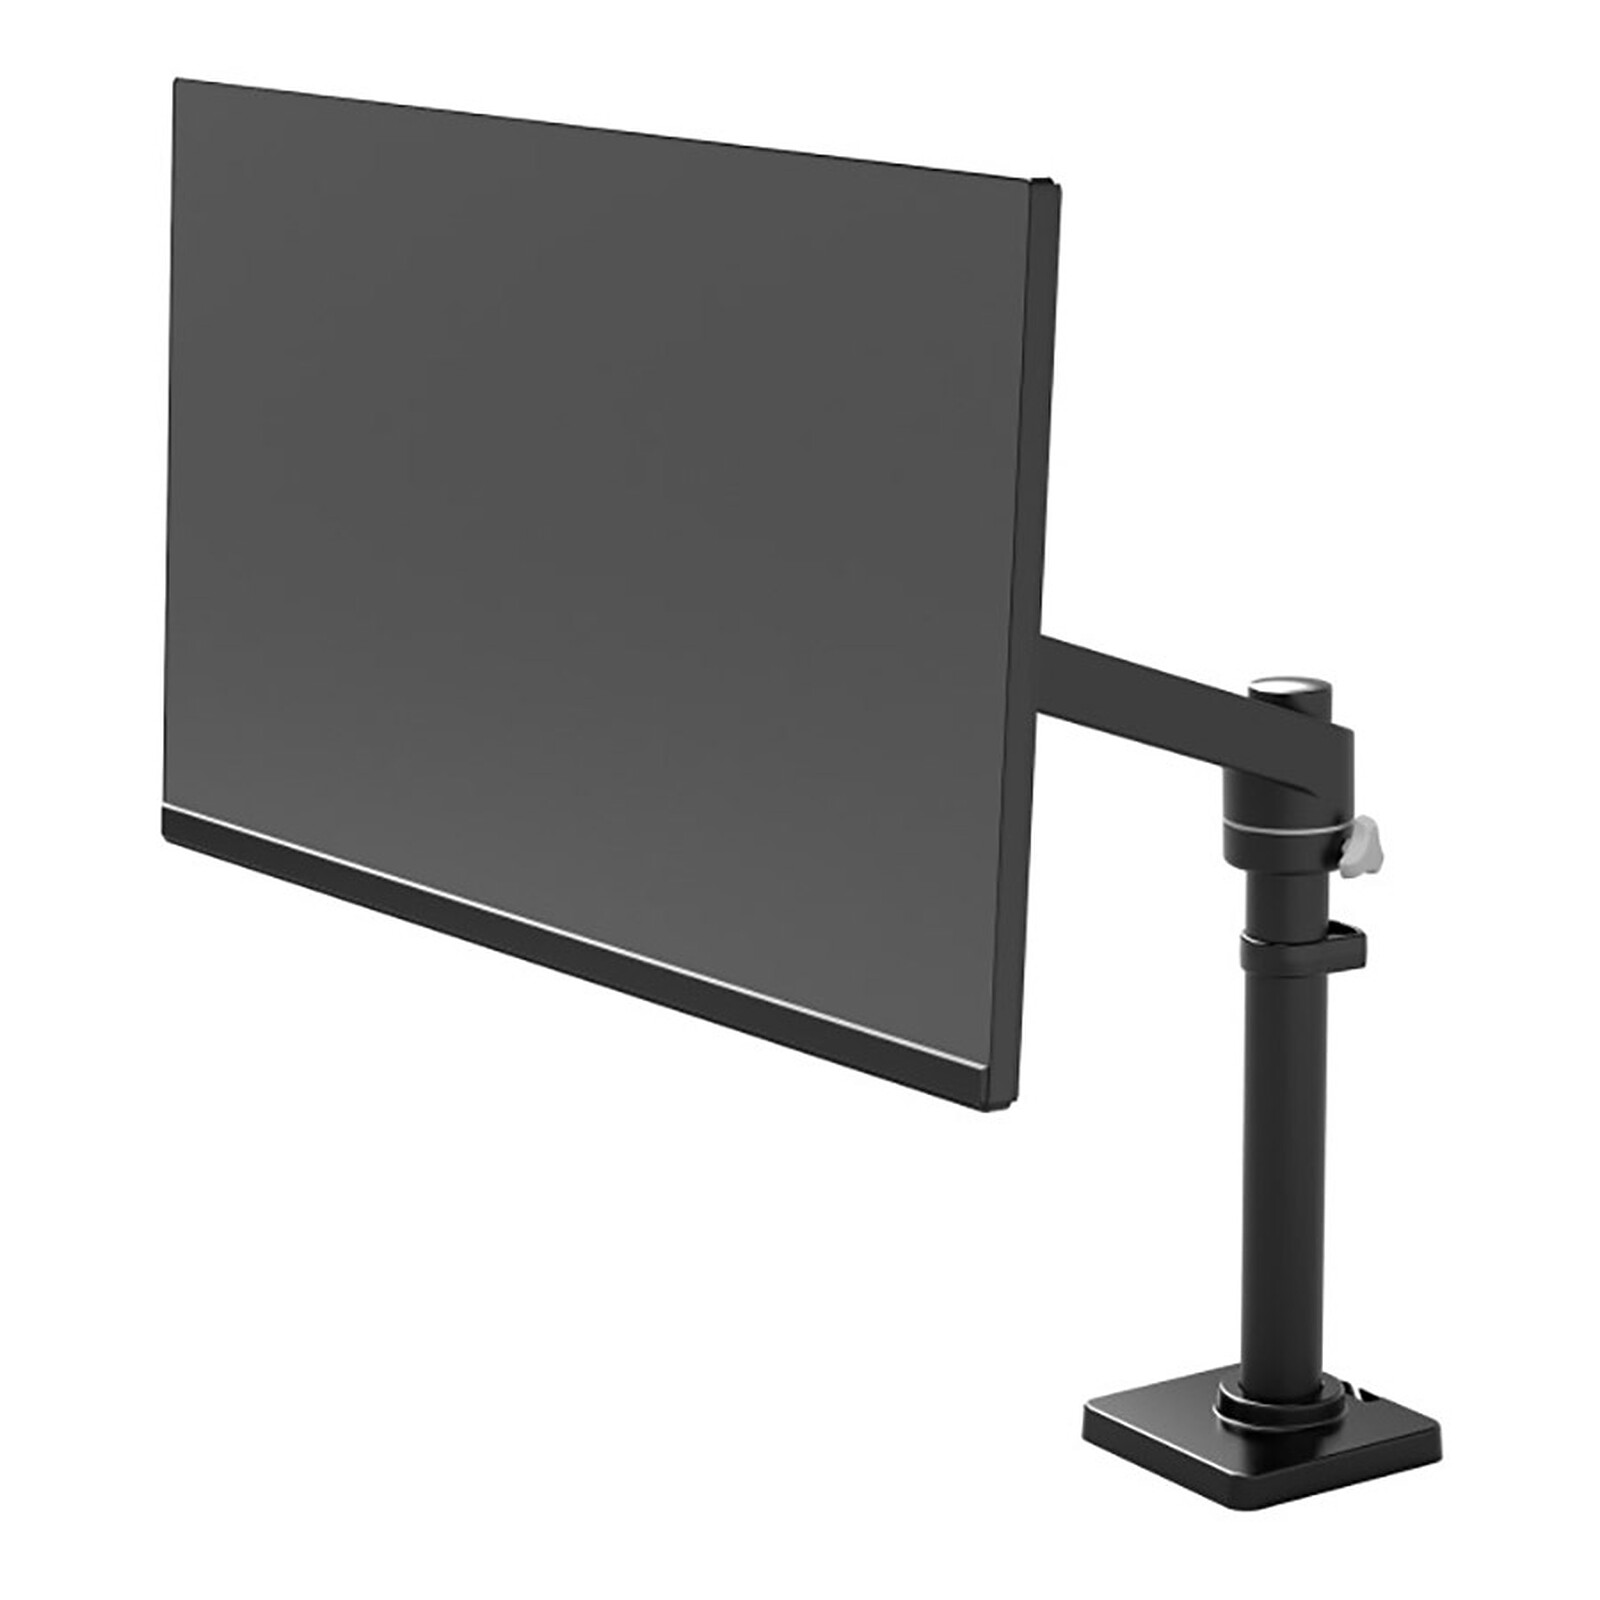 ONKRON D101FS Support d'écran de 13 à 34 pouces, pivotant 360°, Noir